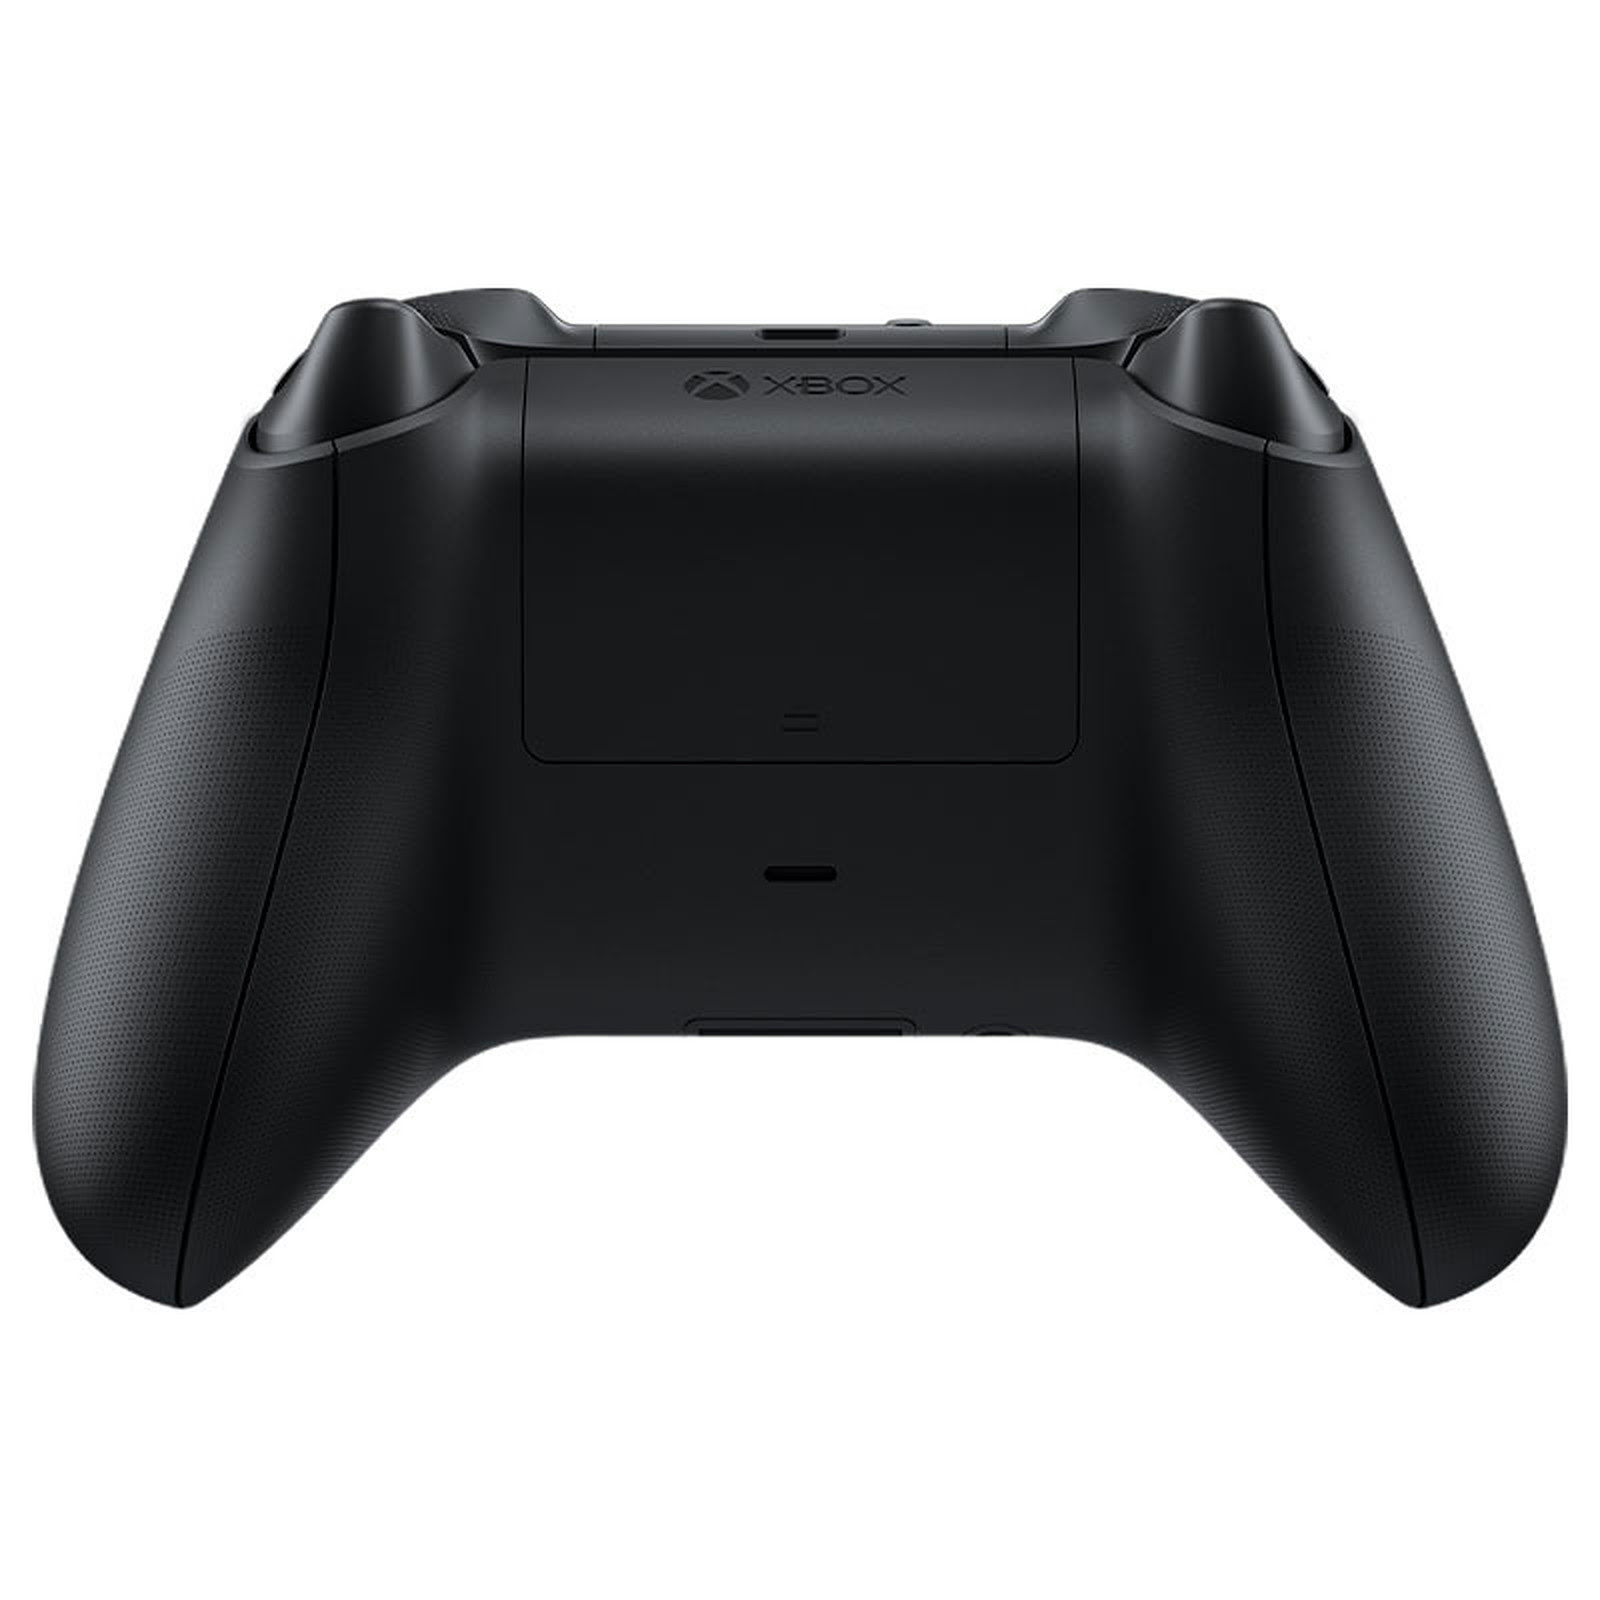 Microsoft Manette Noire Sans Fil Xbox - Périphérique de jeu - 1